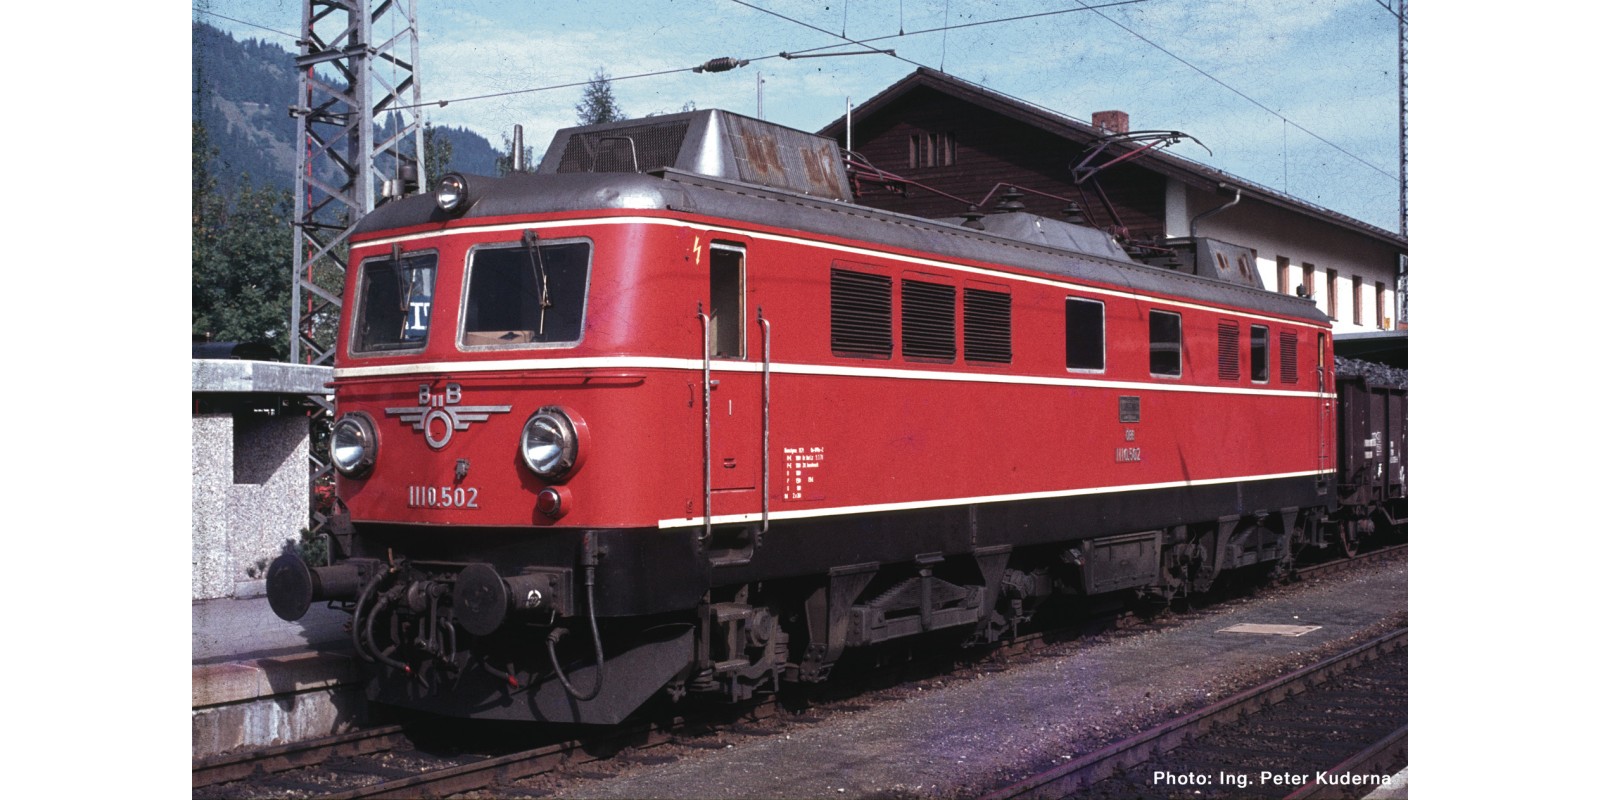 RO72373 - Electric locomotive 1110.502